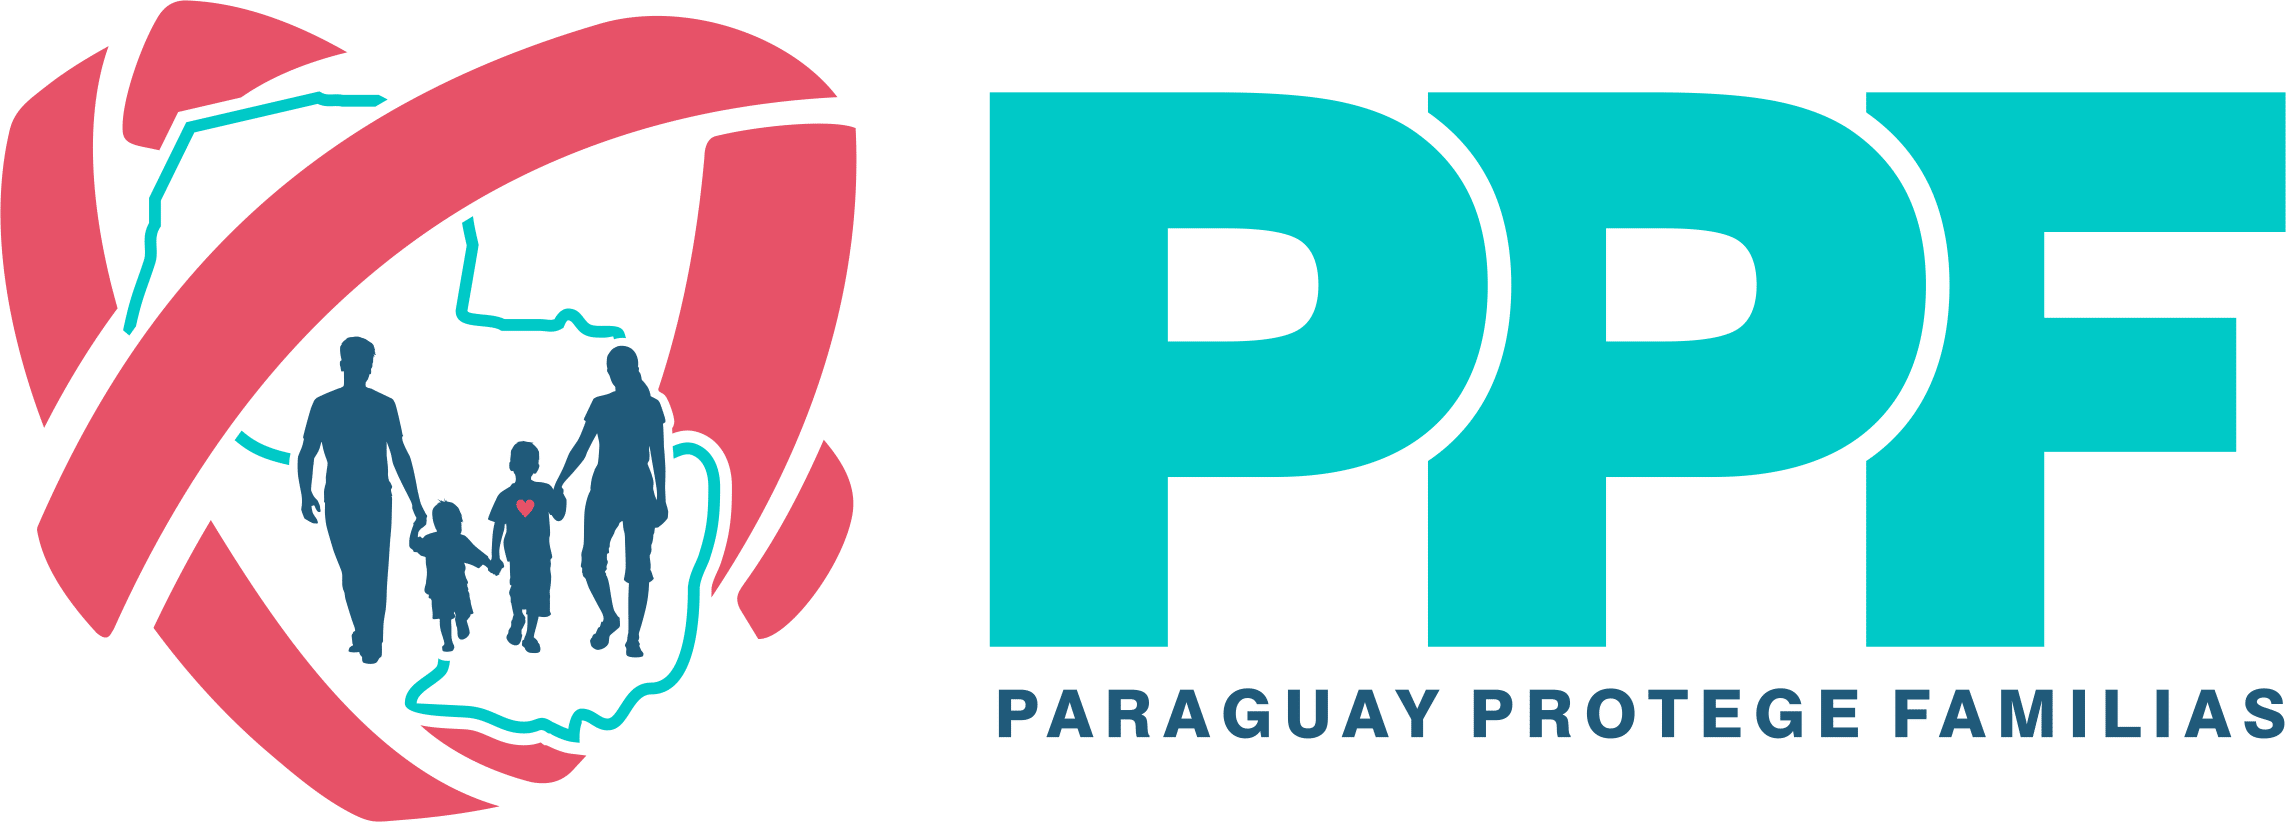 Paraguay Protege Familias